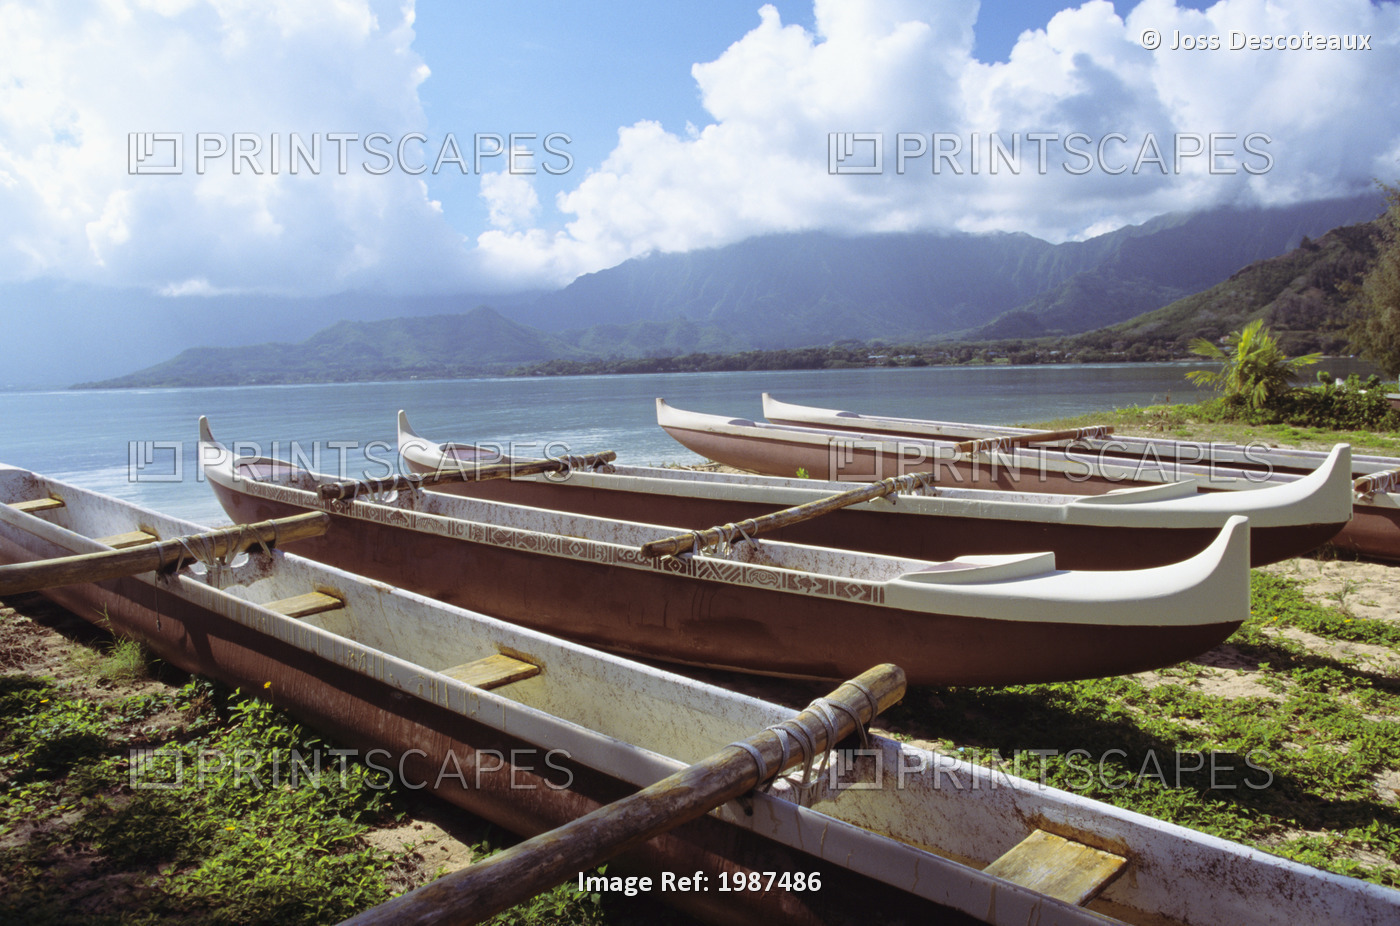 Hawaii, Oahu, Kaneohe Bay, Secret Island, Line Of Outrigger Canoes On Beach.